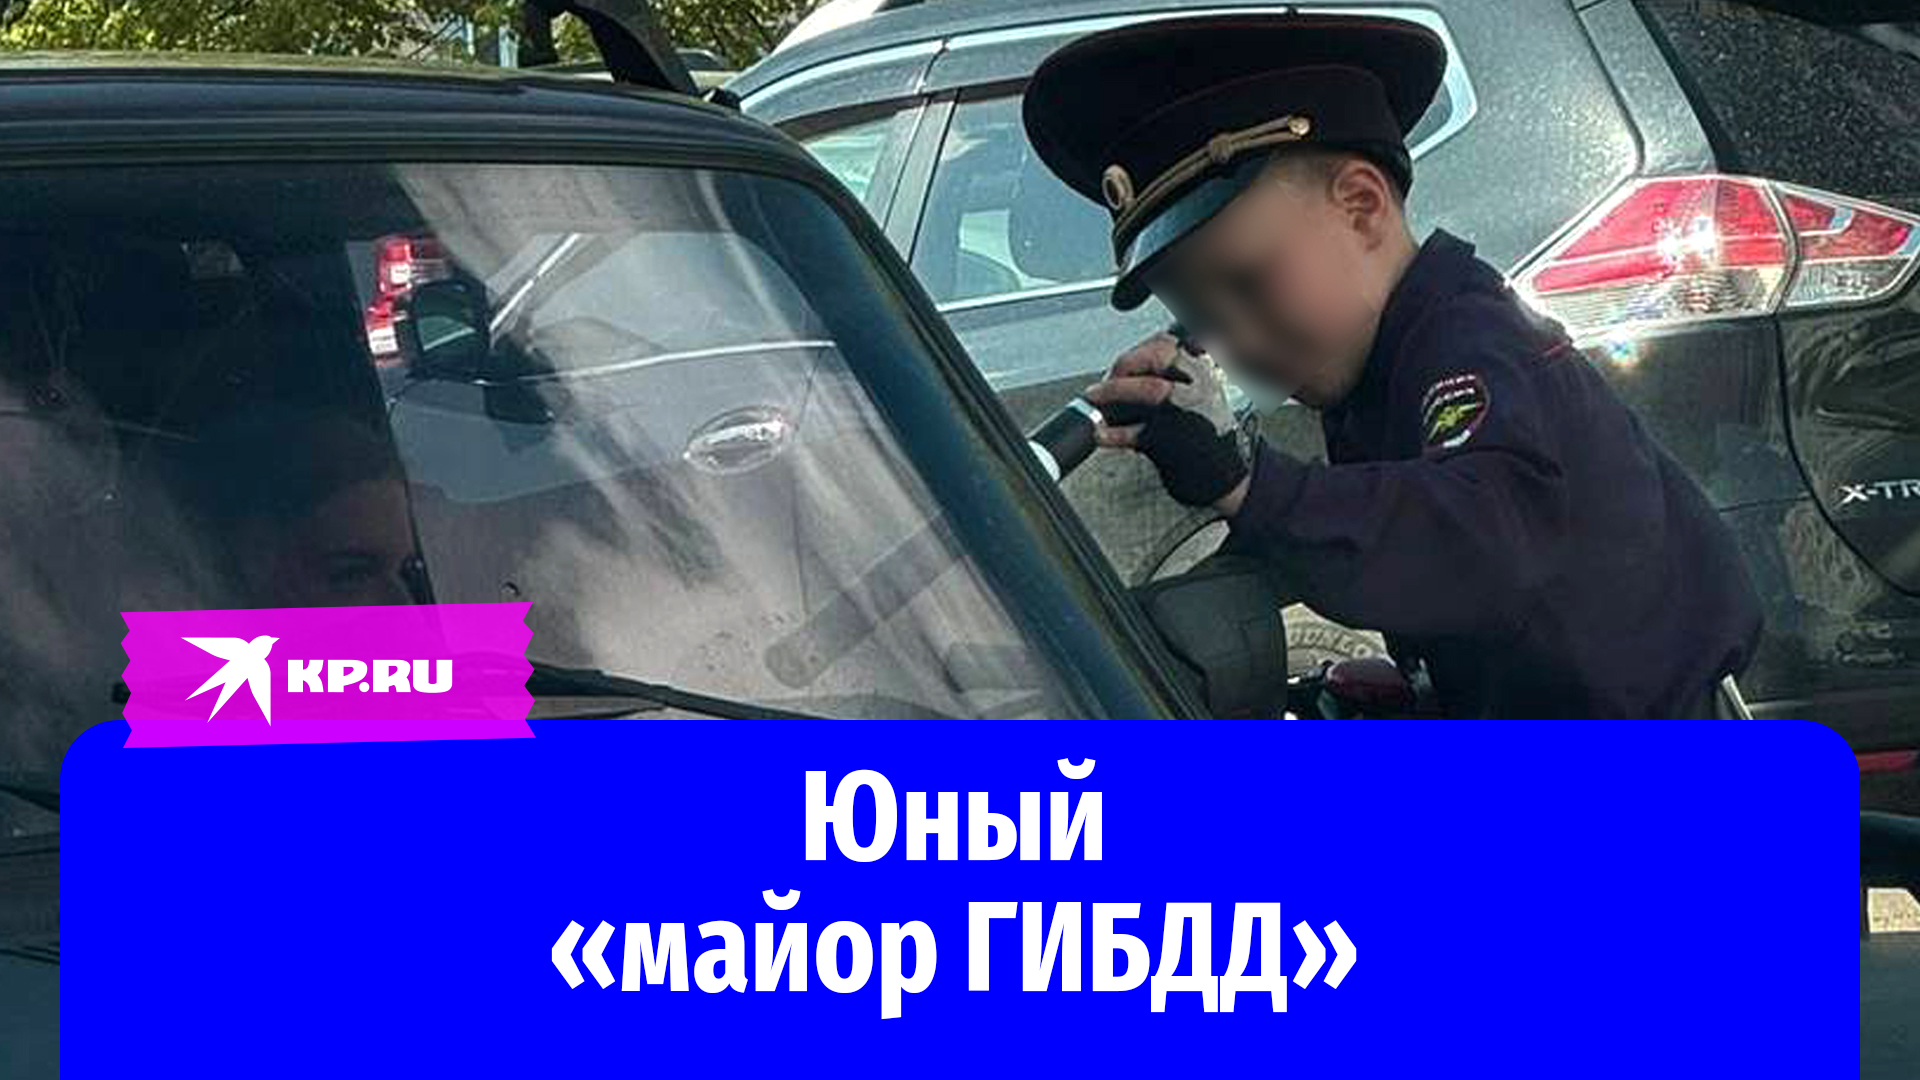 Мальчик в форме ГИБДД тормозит машины в Раменском